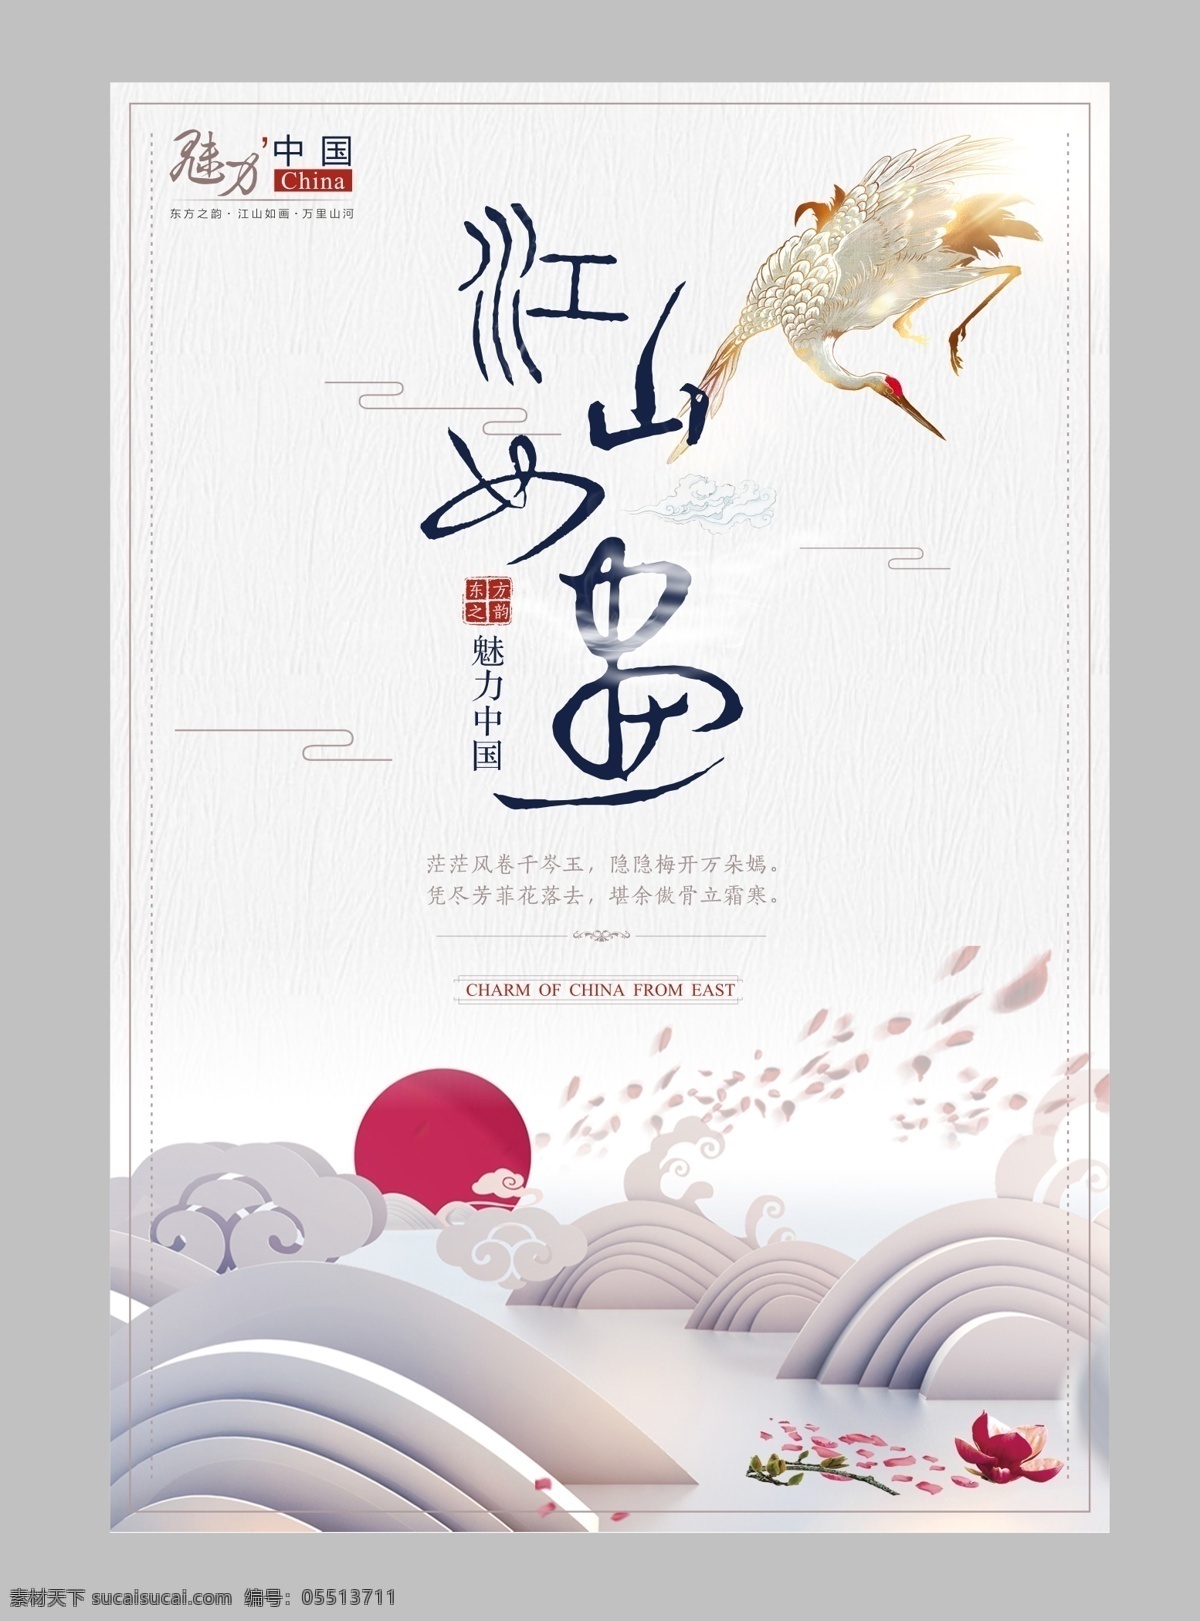 江山如画 魅力 中国 海报 公益 中国风 立体 创意